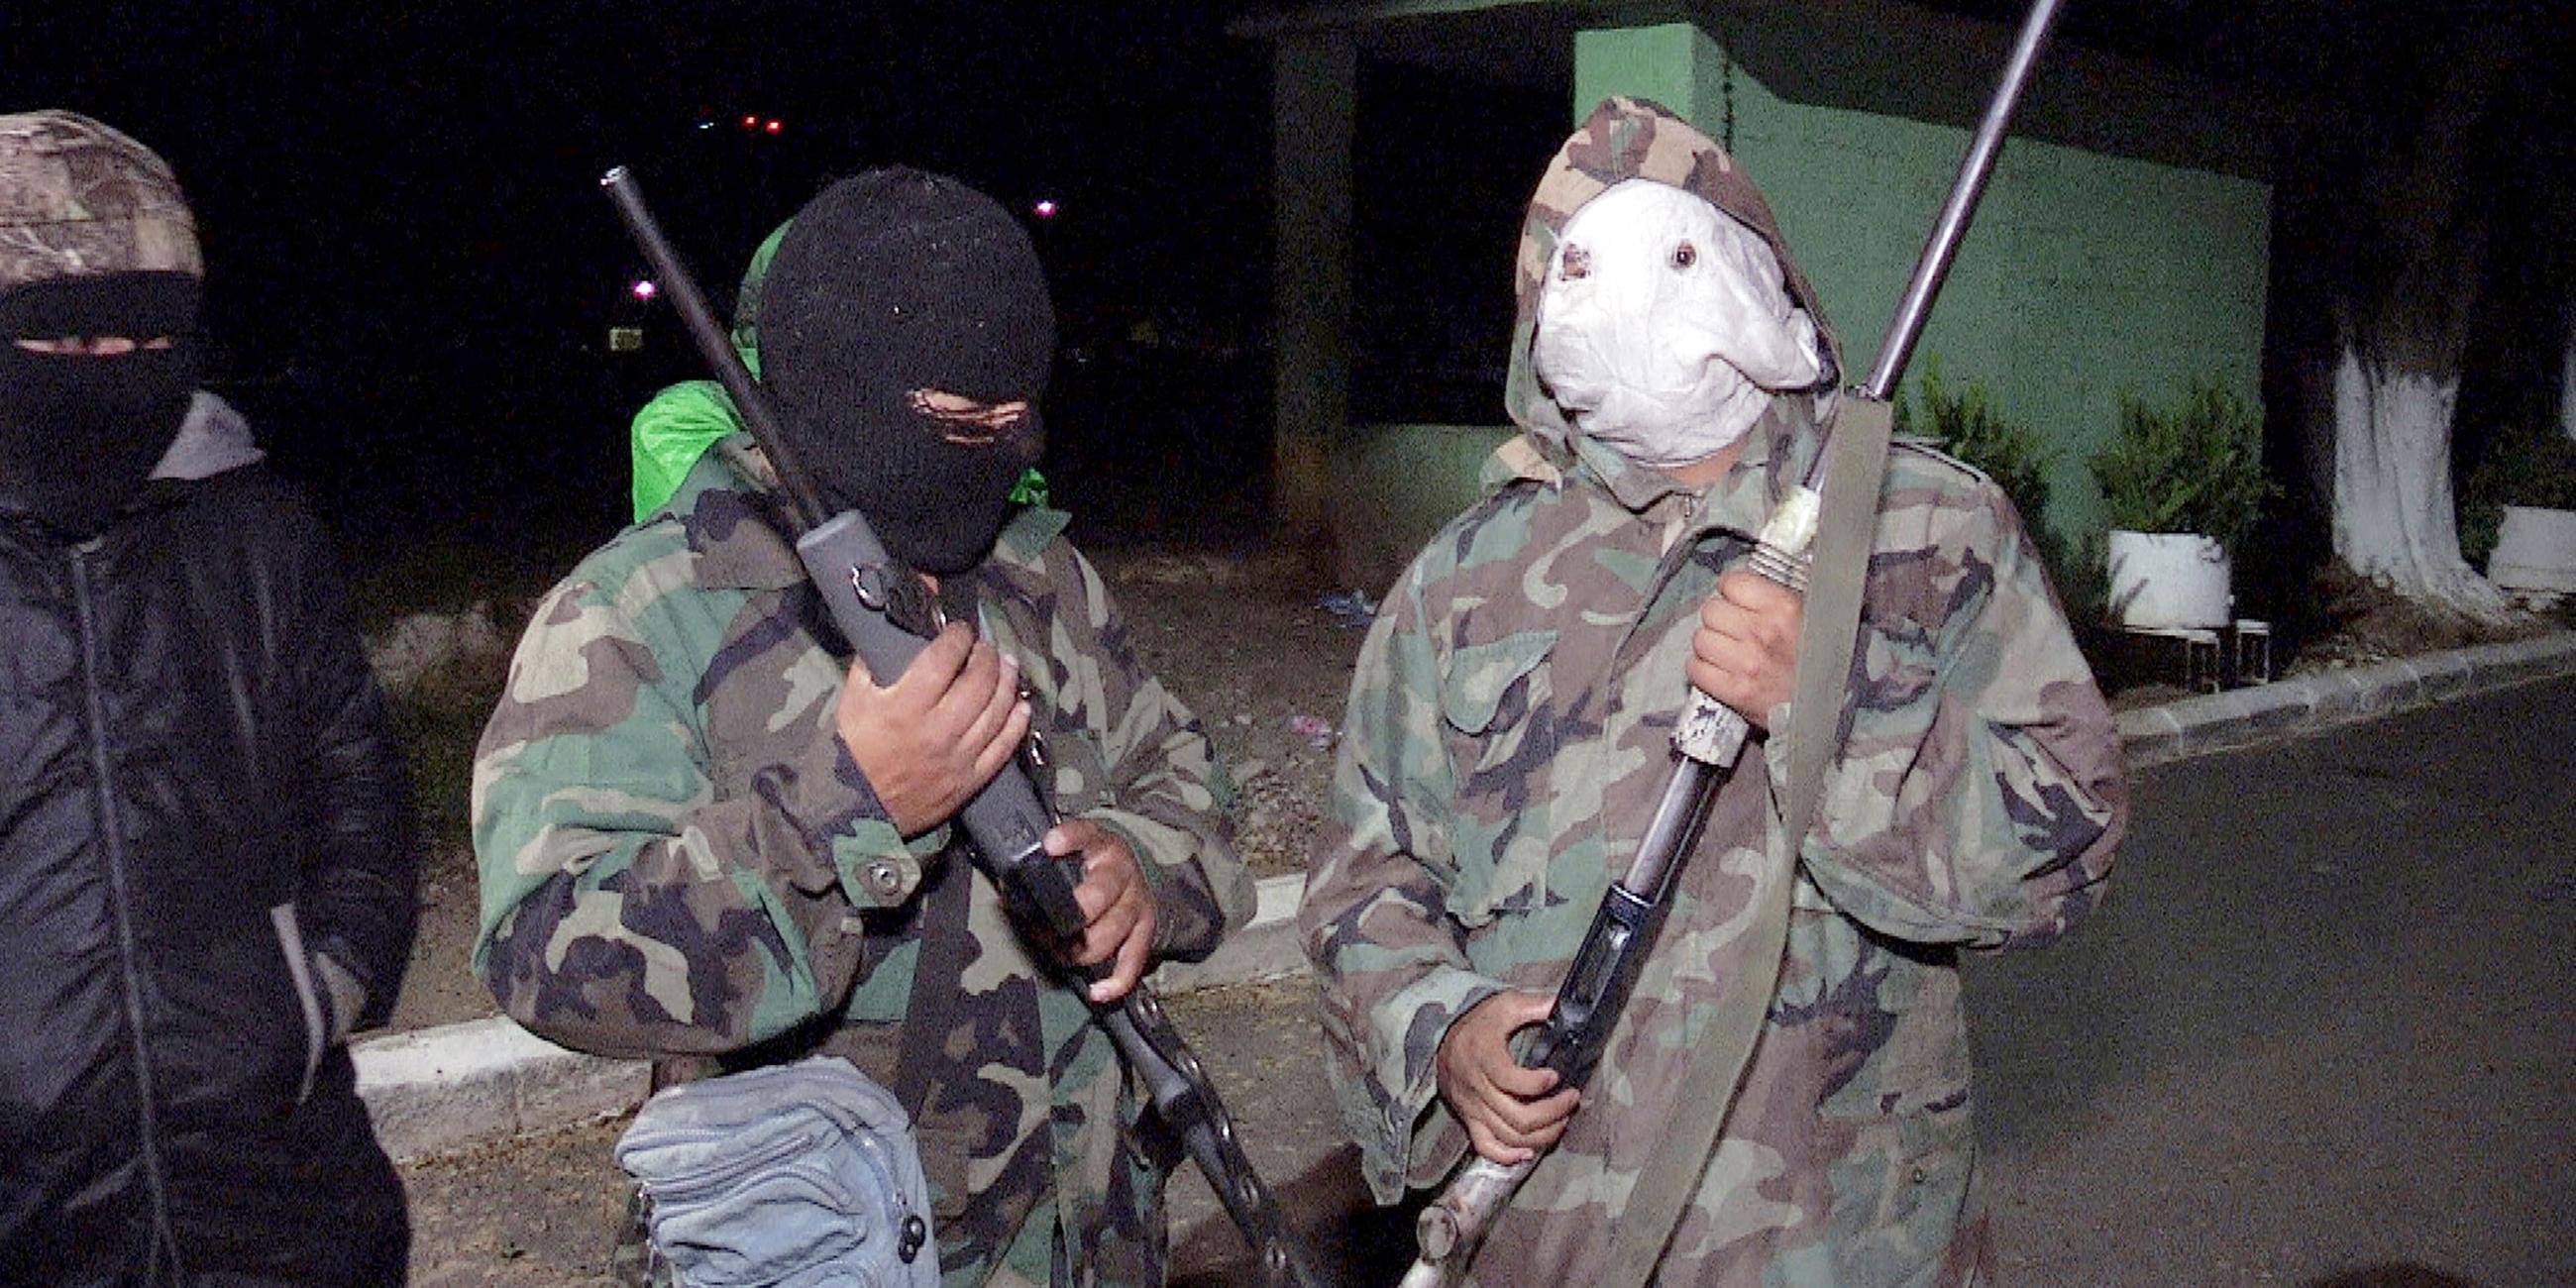 "Kinder der Gewalt - Guatemalas Jugendbanden": Zwei vermummte Männer mit Sturmmasken und Waffen stehen nachts auf einer Straße.